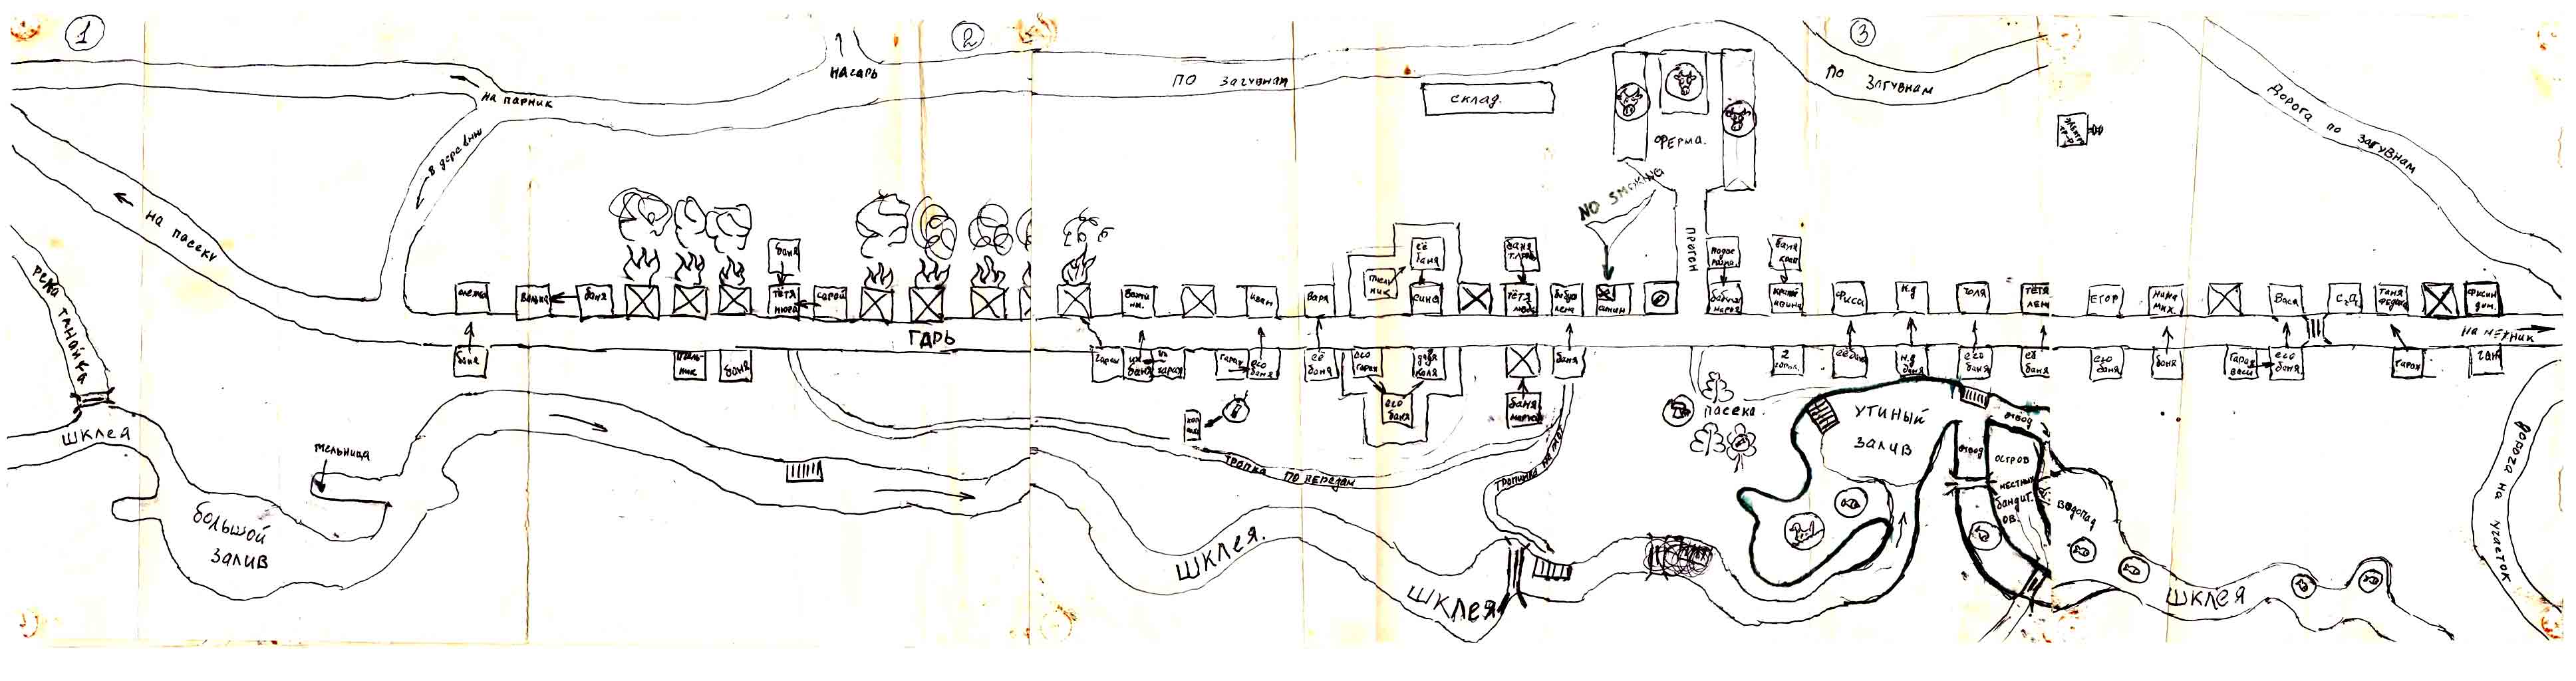 Карта Танайки, нарисованная неизвестным автором.Прислал Виктор Шнейдер (vikt.shnejder@yandex.ru).